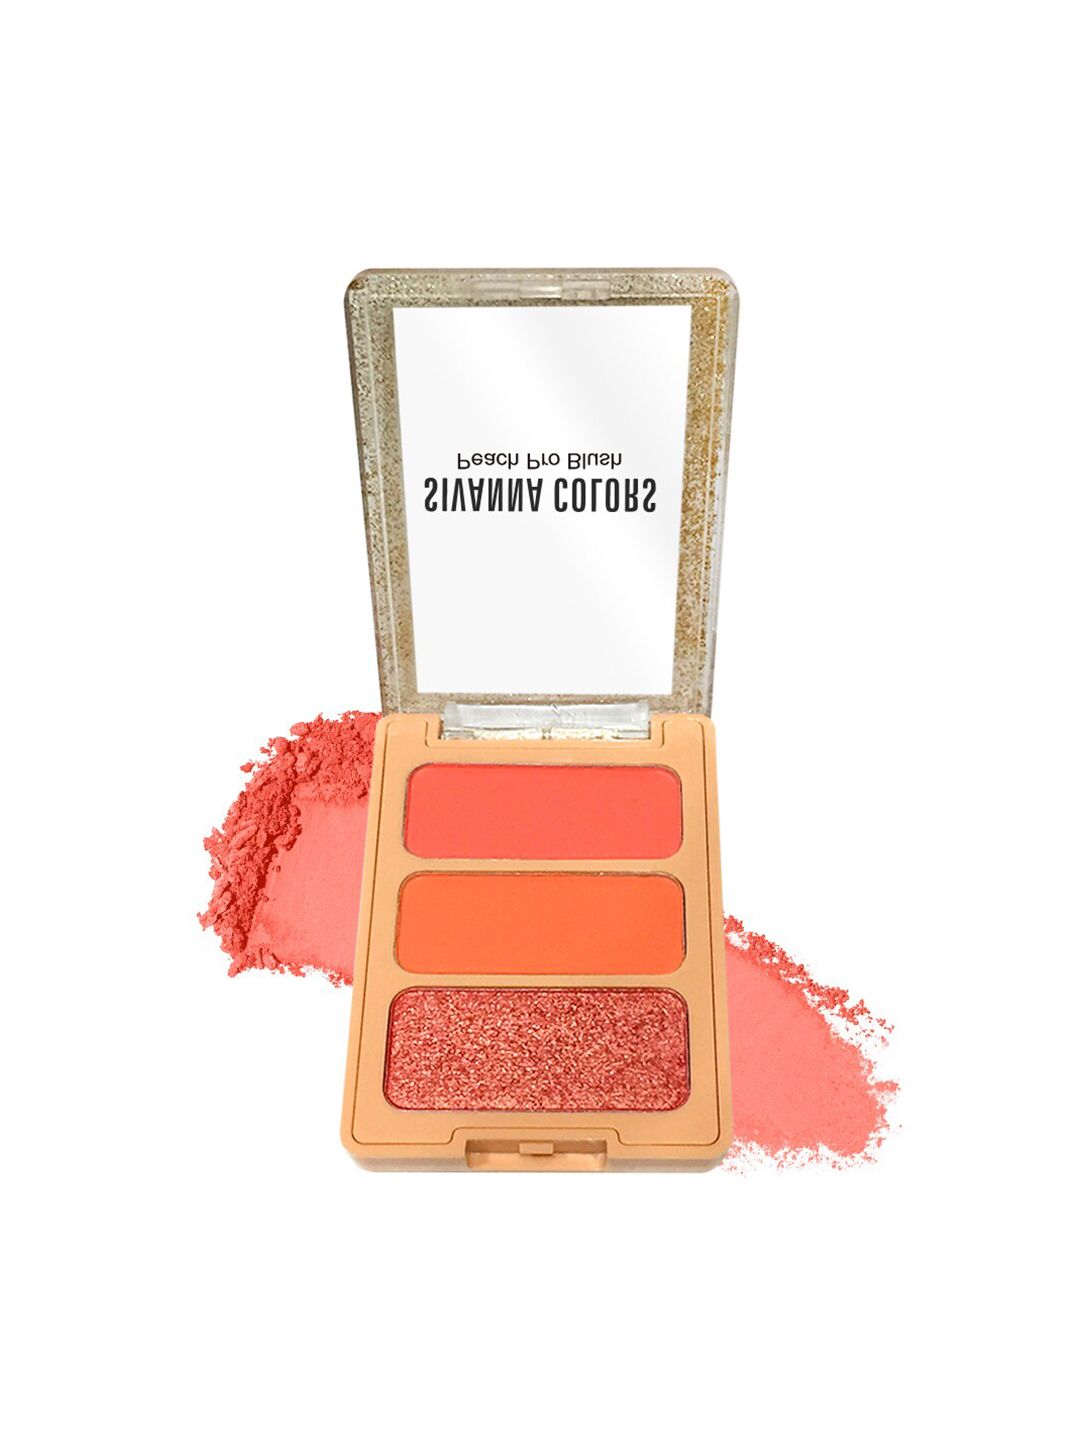 Sivanna Colors Peach Pro Blush Palette - HF6030 02 Price in India